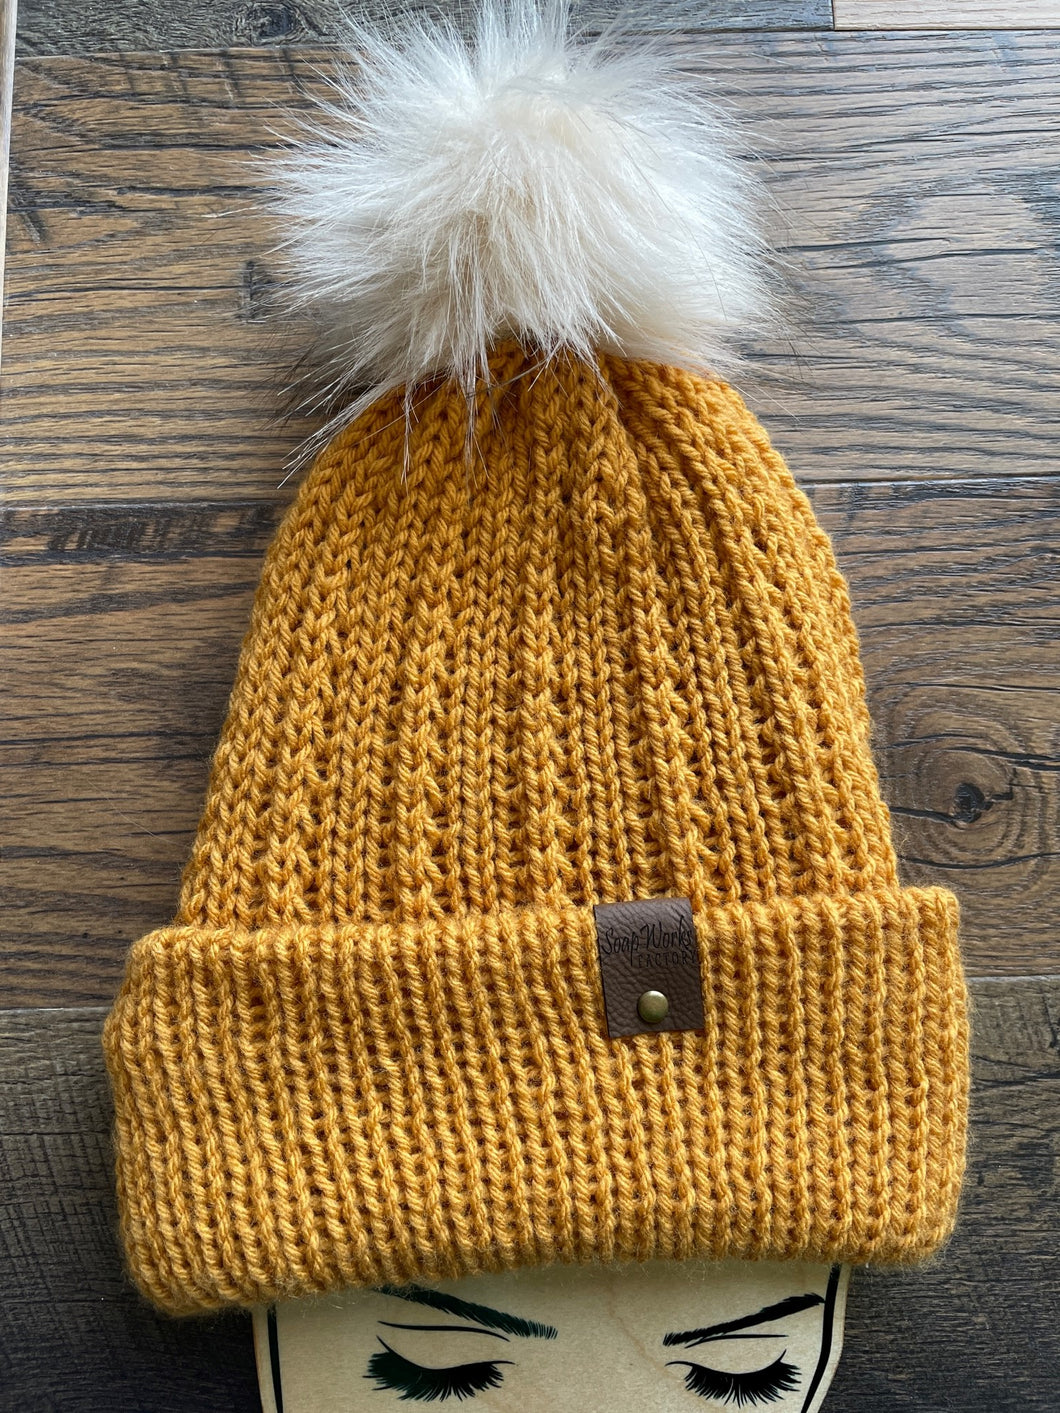 homemade knit hat mustard